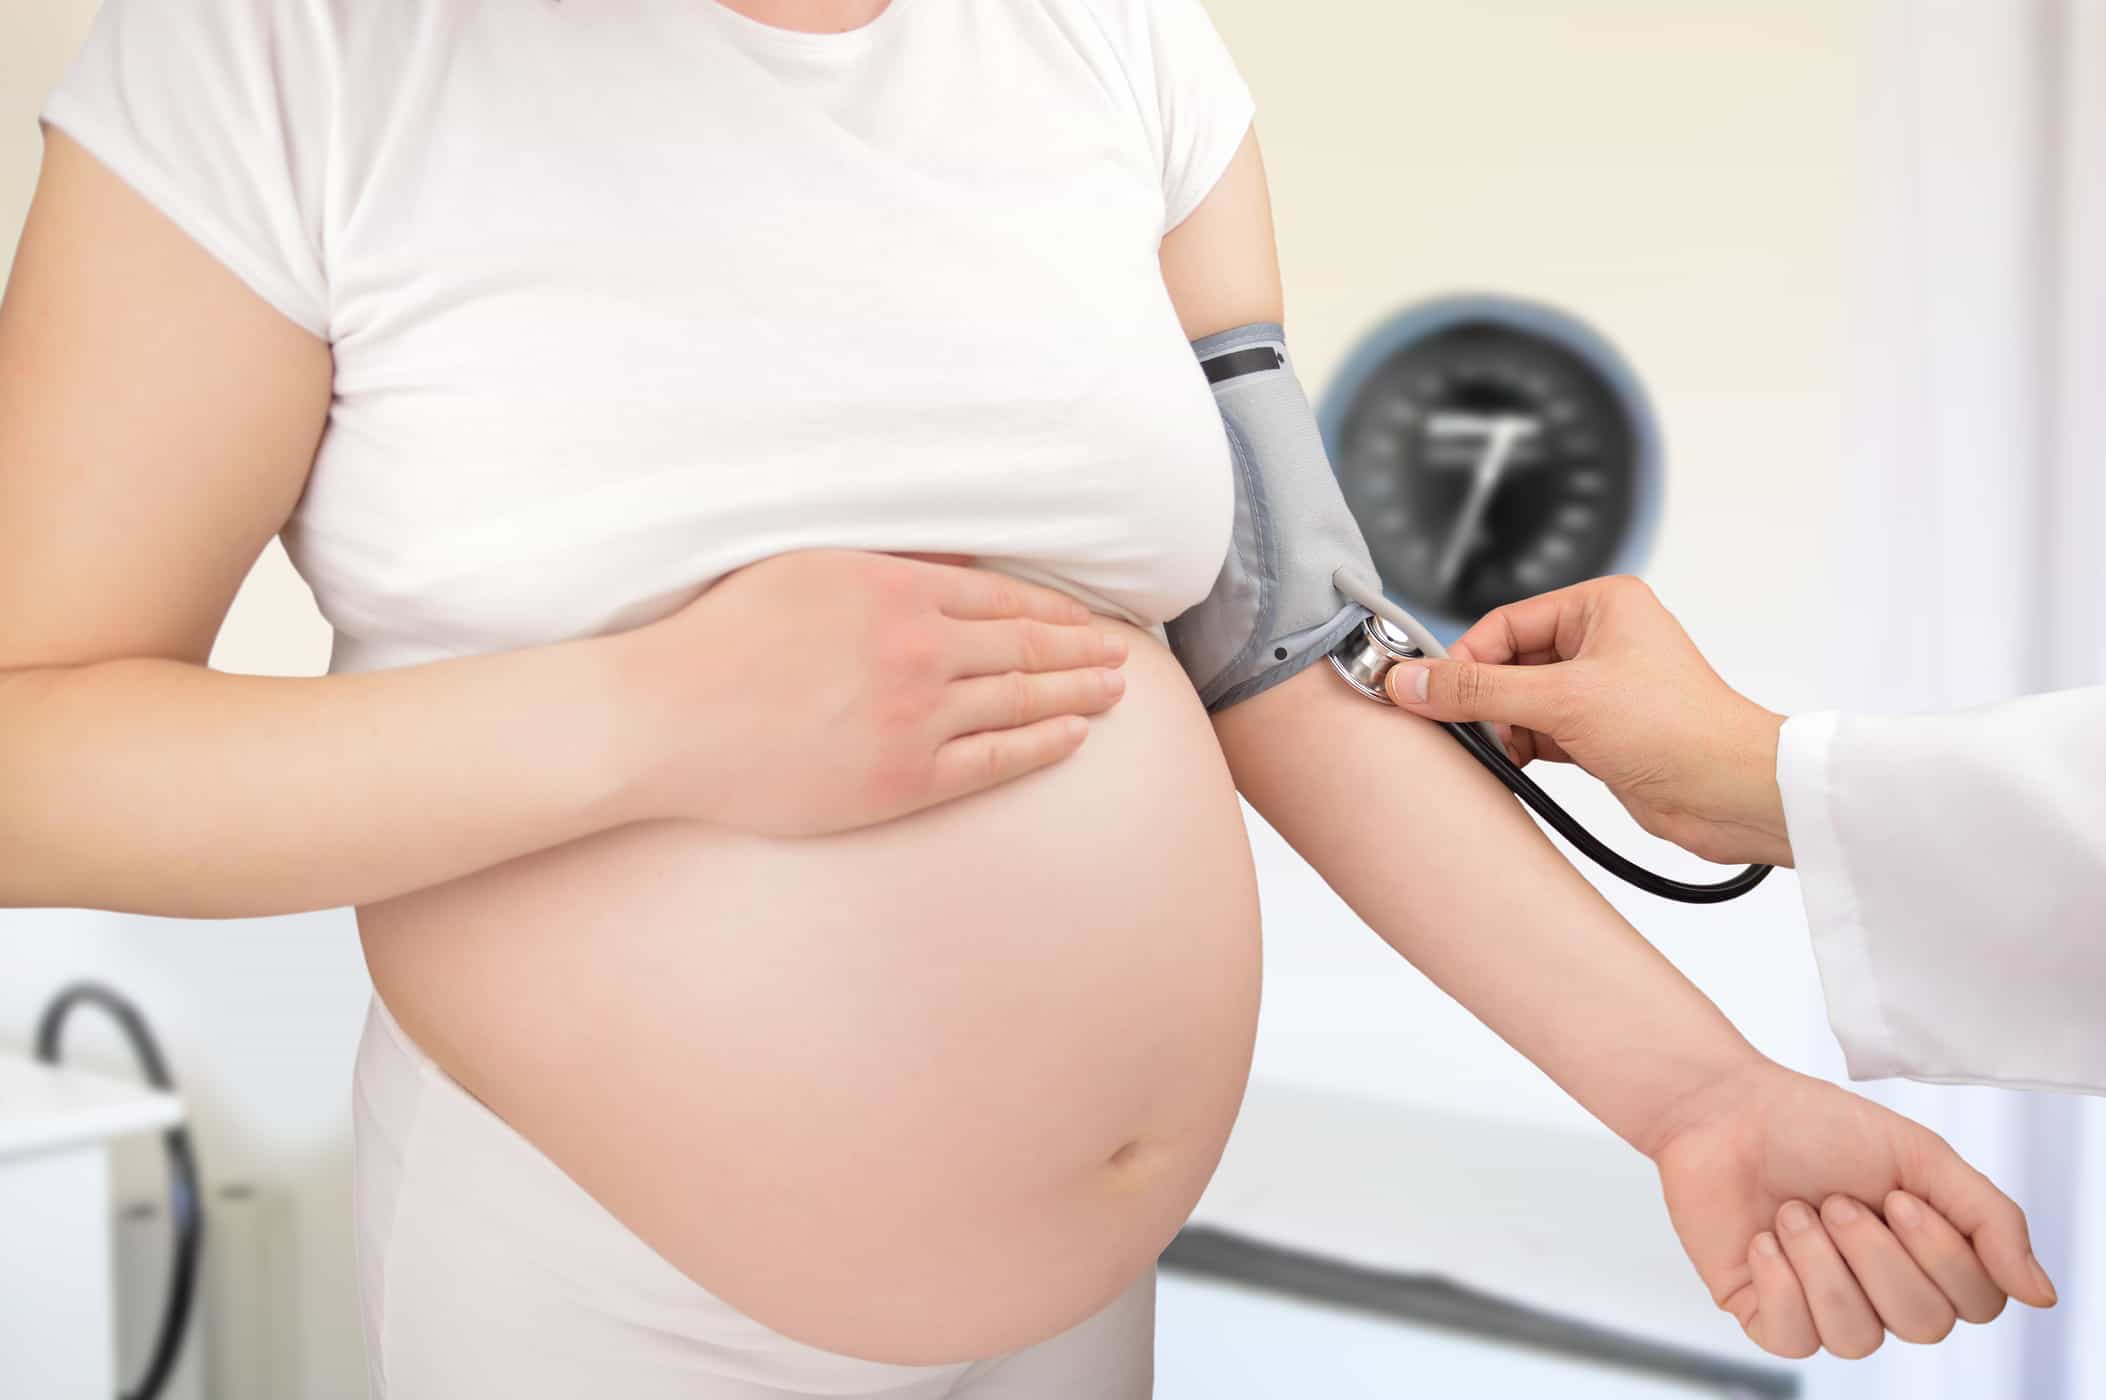 visok krvni tlak med nosečnostjo